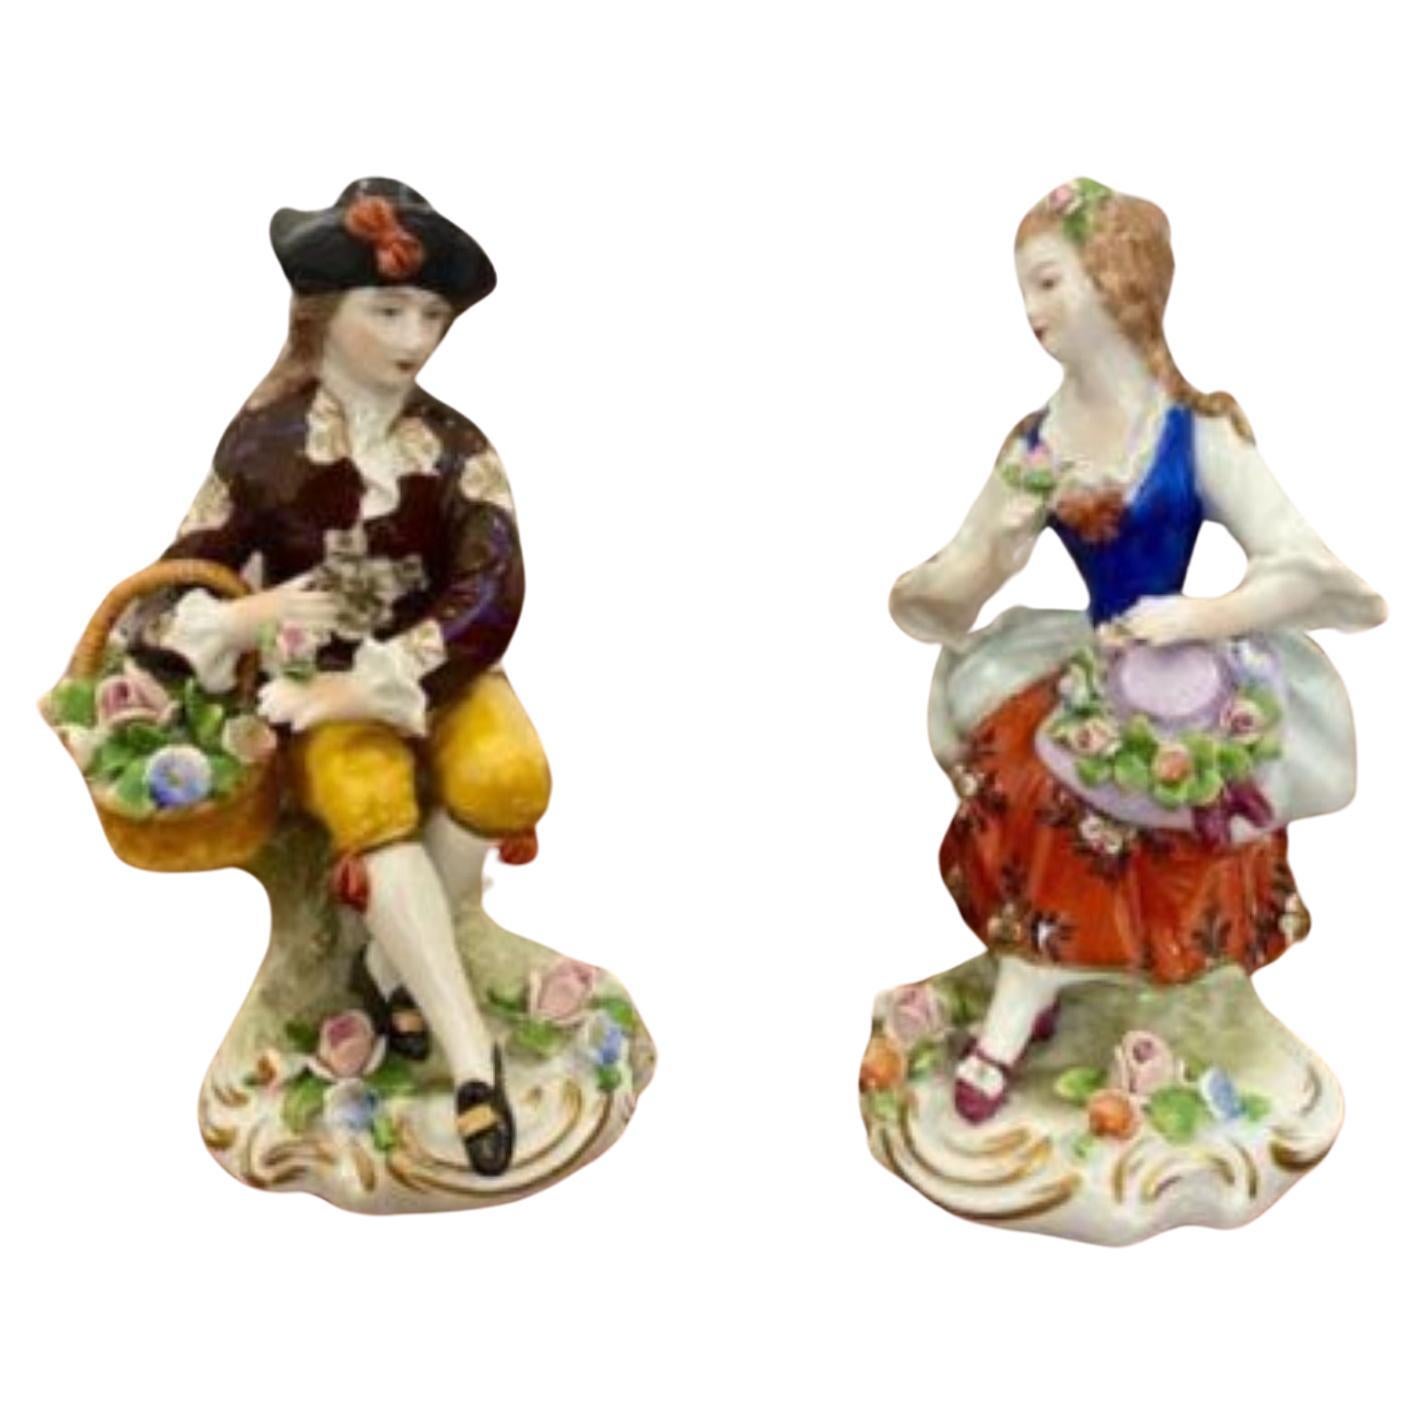 Pair of antique continental porcelain figures